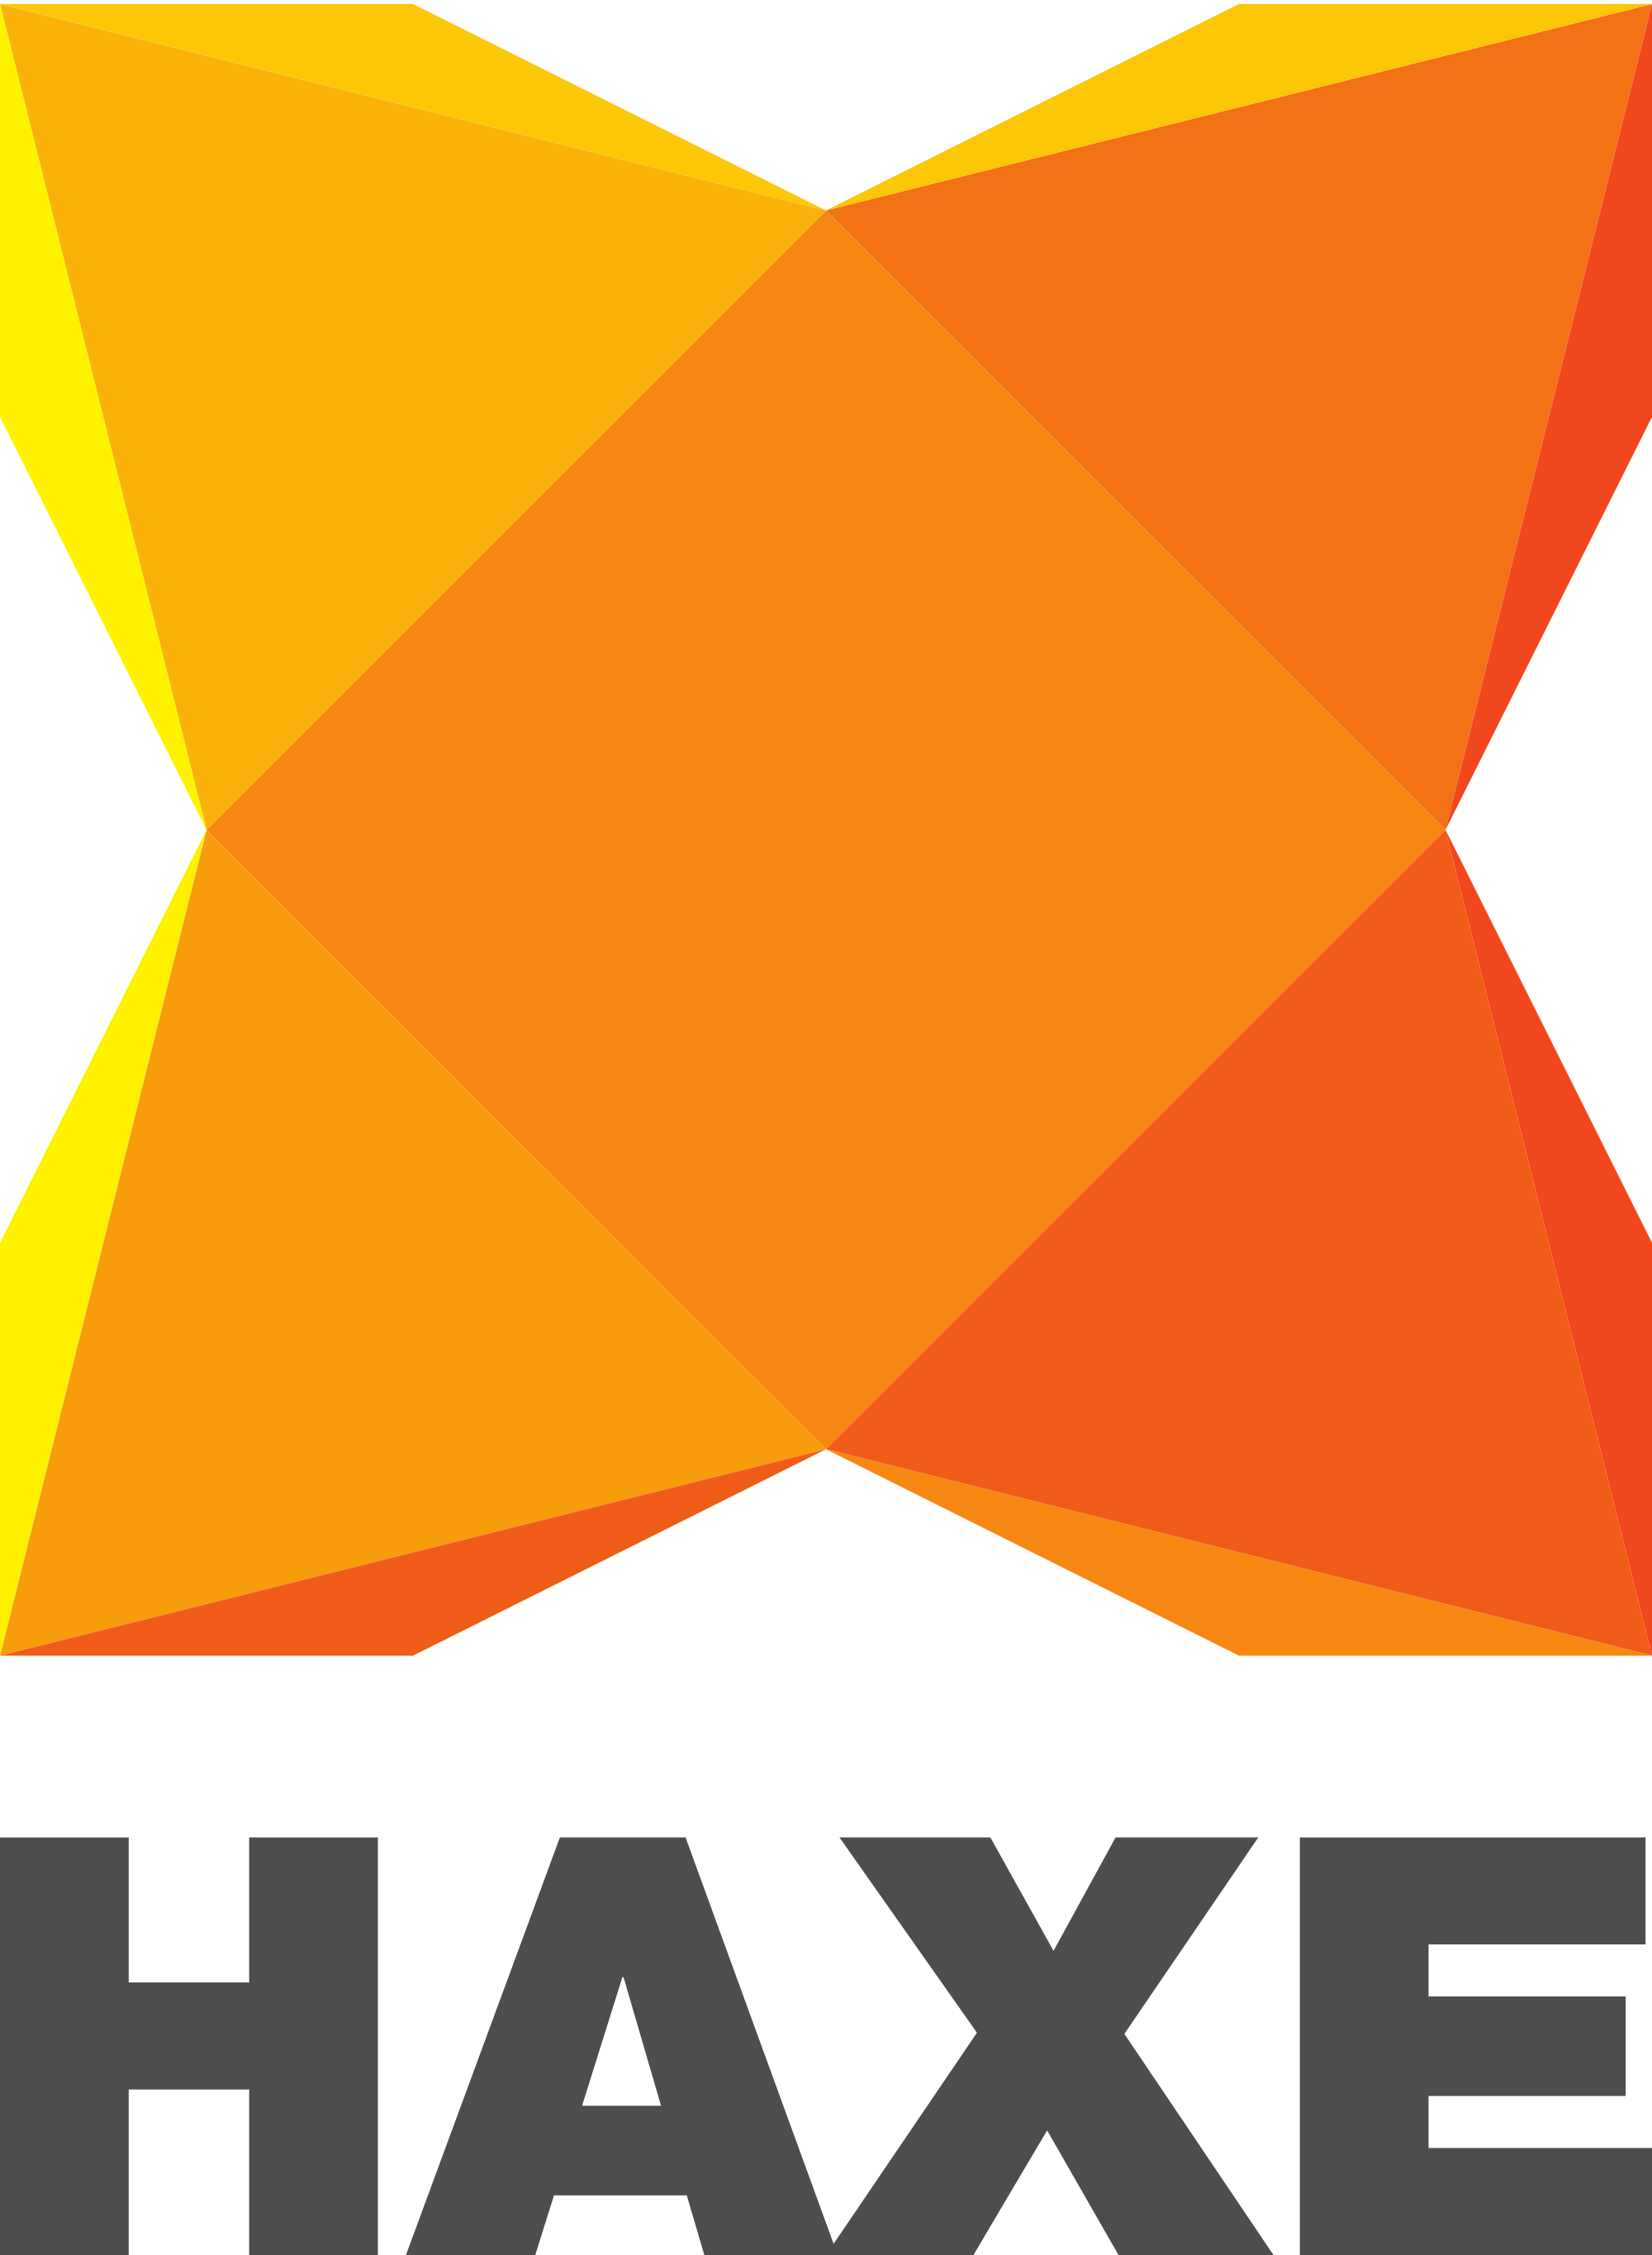 Haxe vertical logo